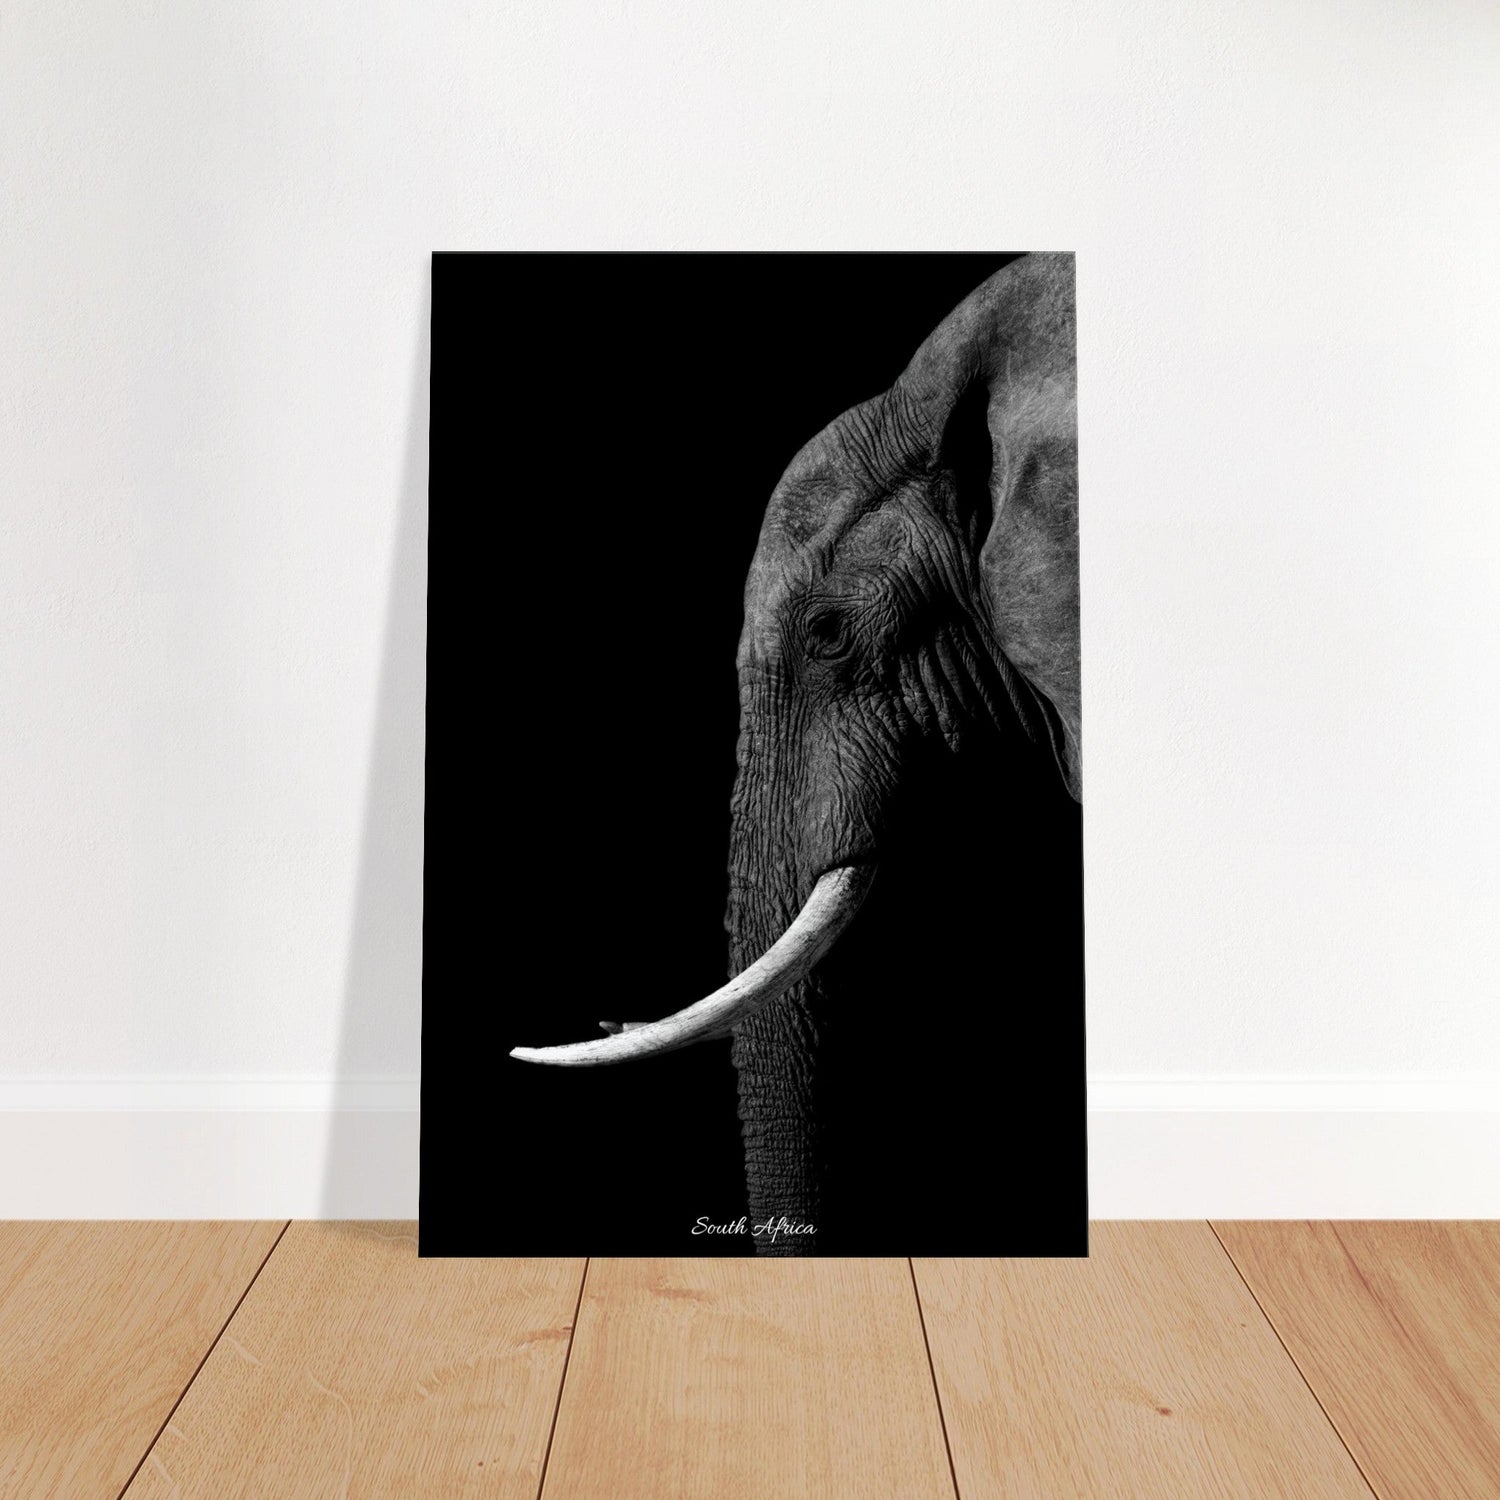 50x75 cm / 20x30″ Canvas Black & White Elephant portrait by Picture This